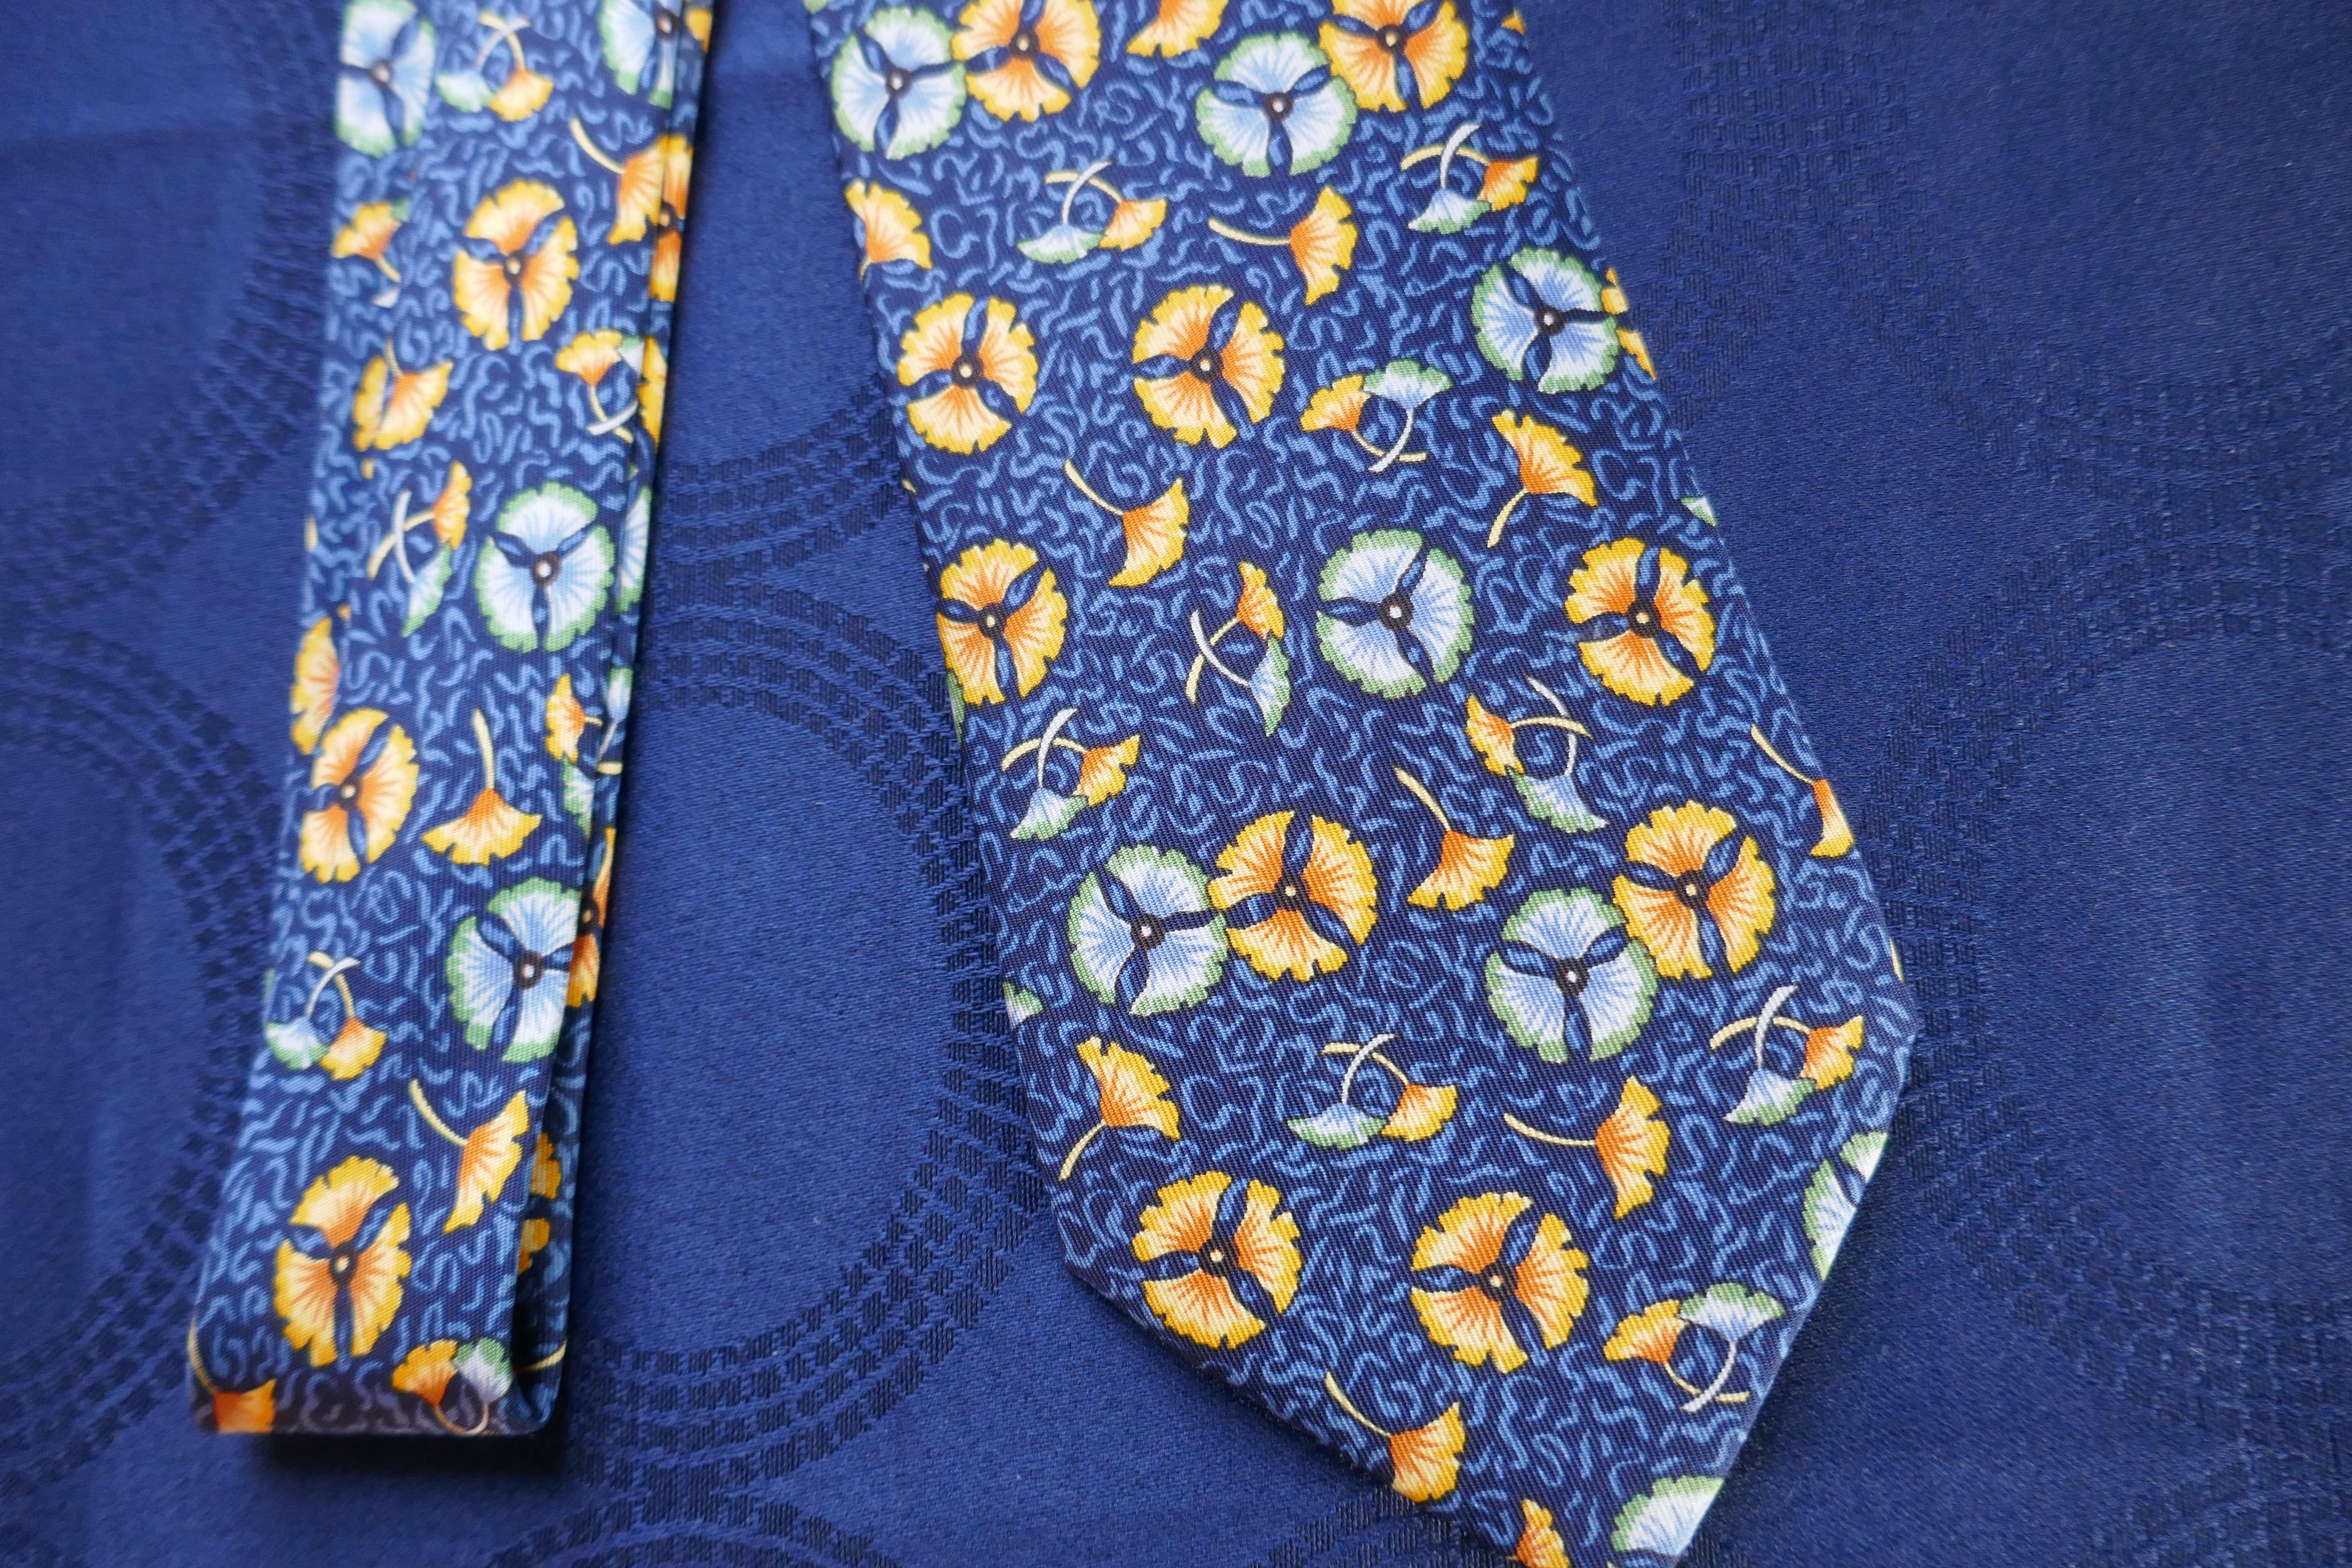 Rare cravate en soie Hermès, motif de fleurs de lotus, orange et bleu Hermès

Classique Hermes All Over floralDesign
Superbe combinaison de couleurs orange et bleu
Une cravate très spéciale, immédiatement reconnaissable comme Hermès par les